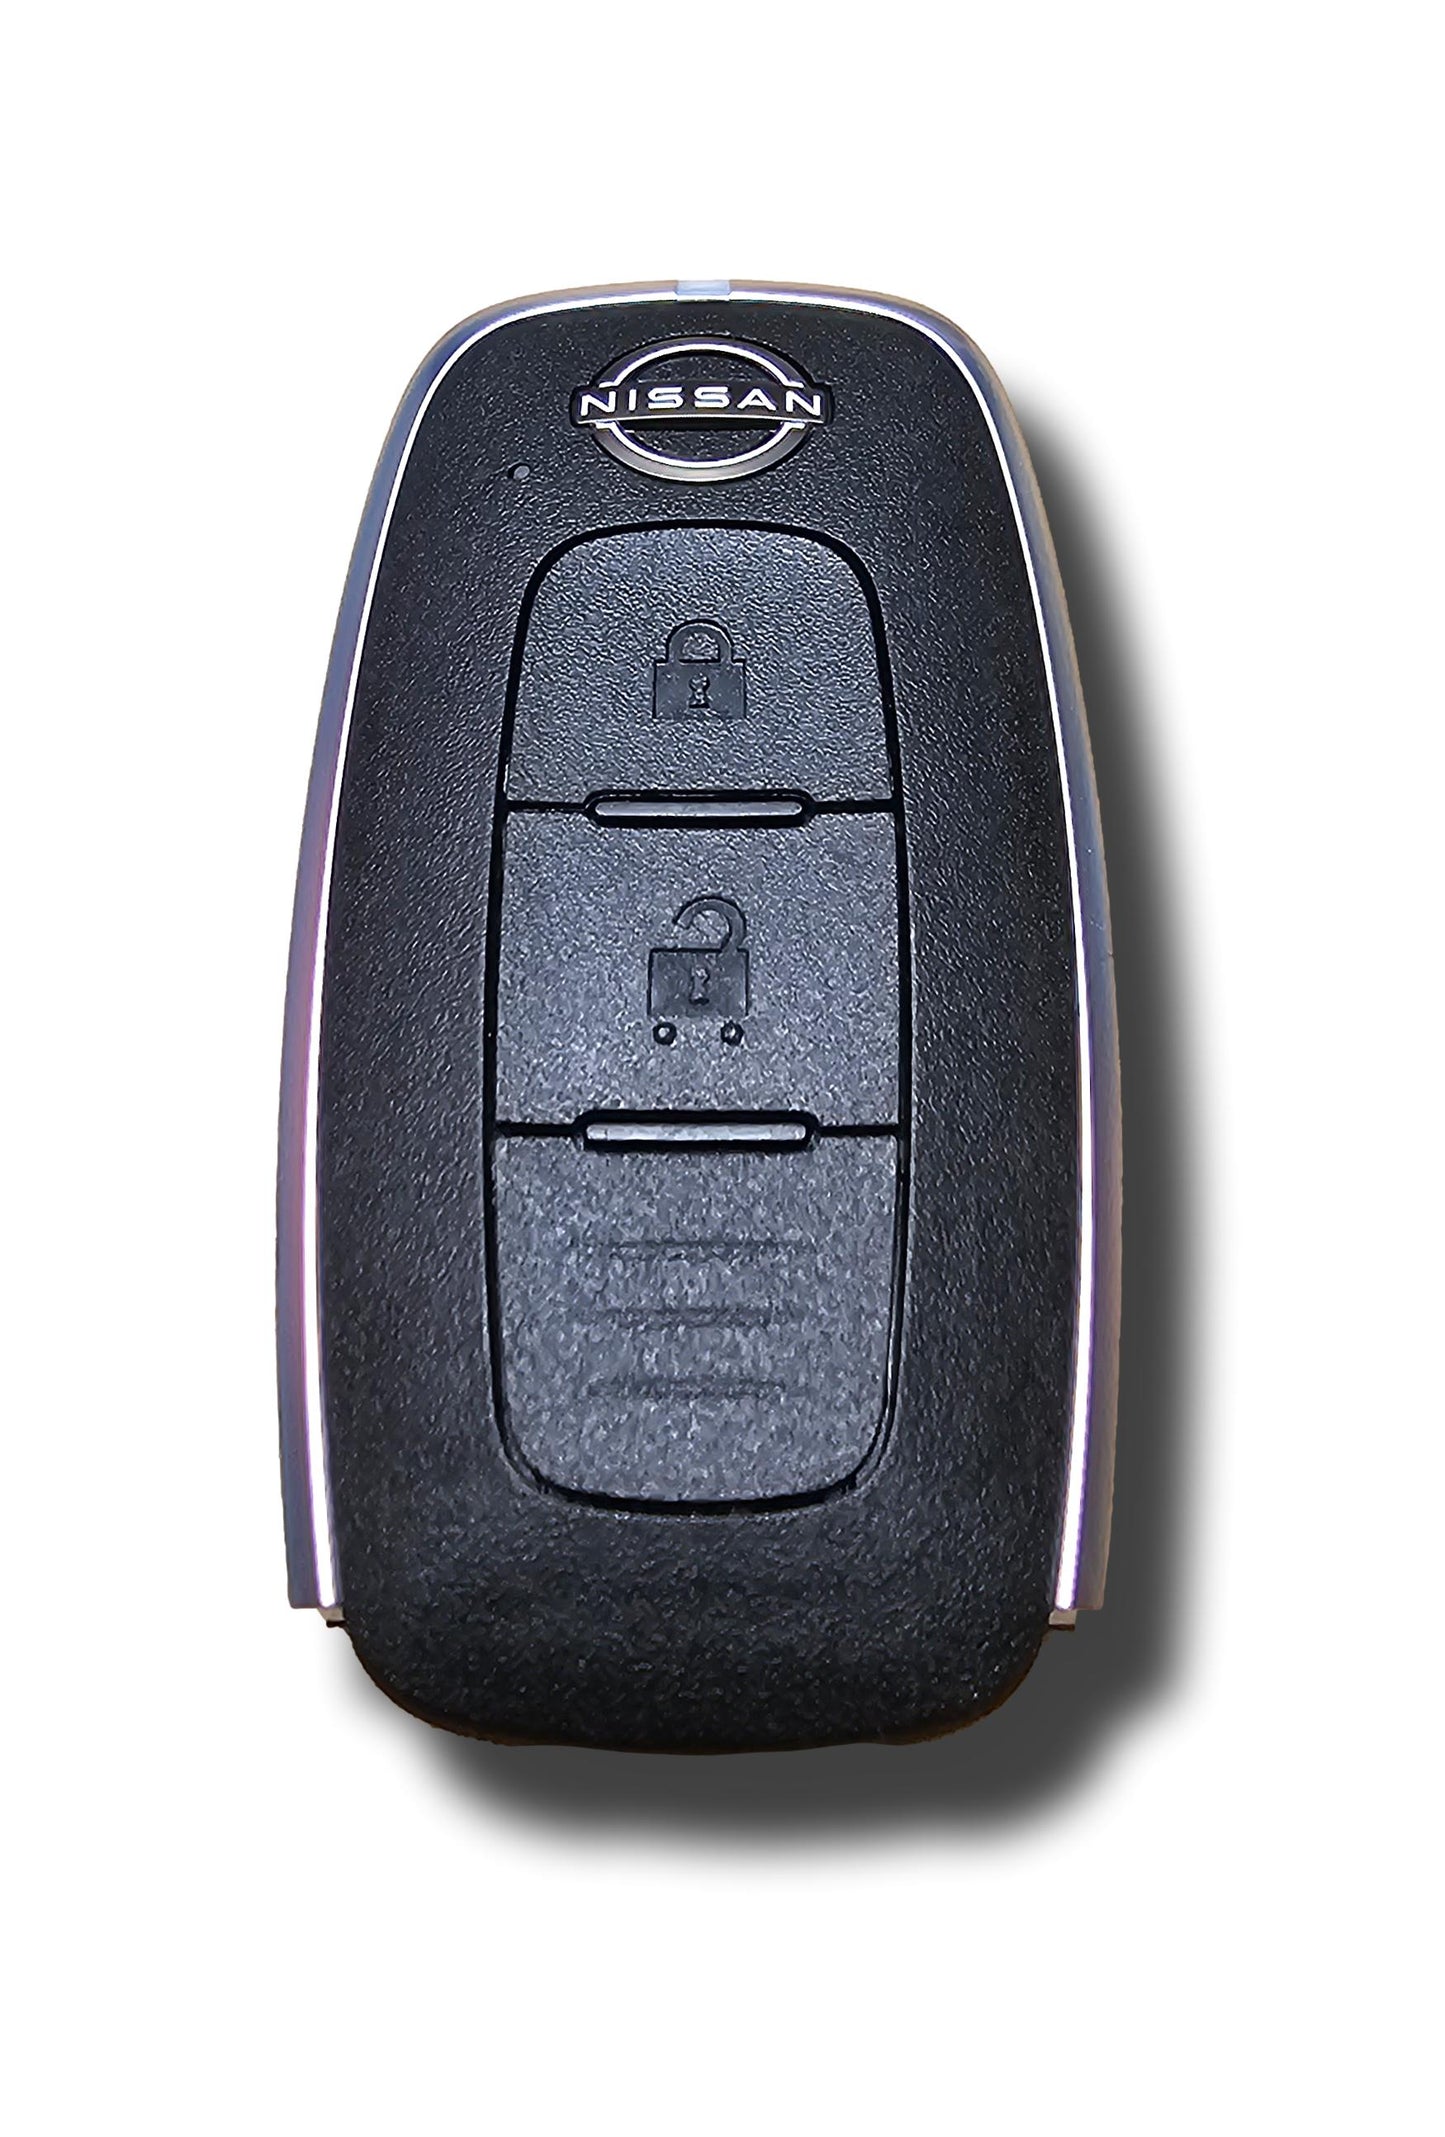 Genuine New Nissan Juke Remote Key Keyless Remote Entry 285E35MS0C S180146106